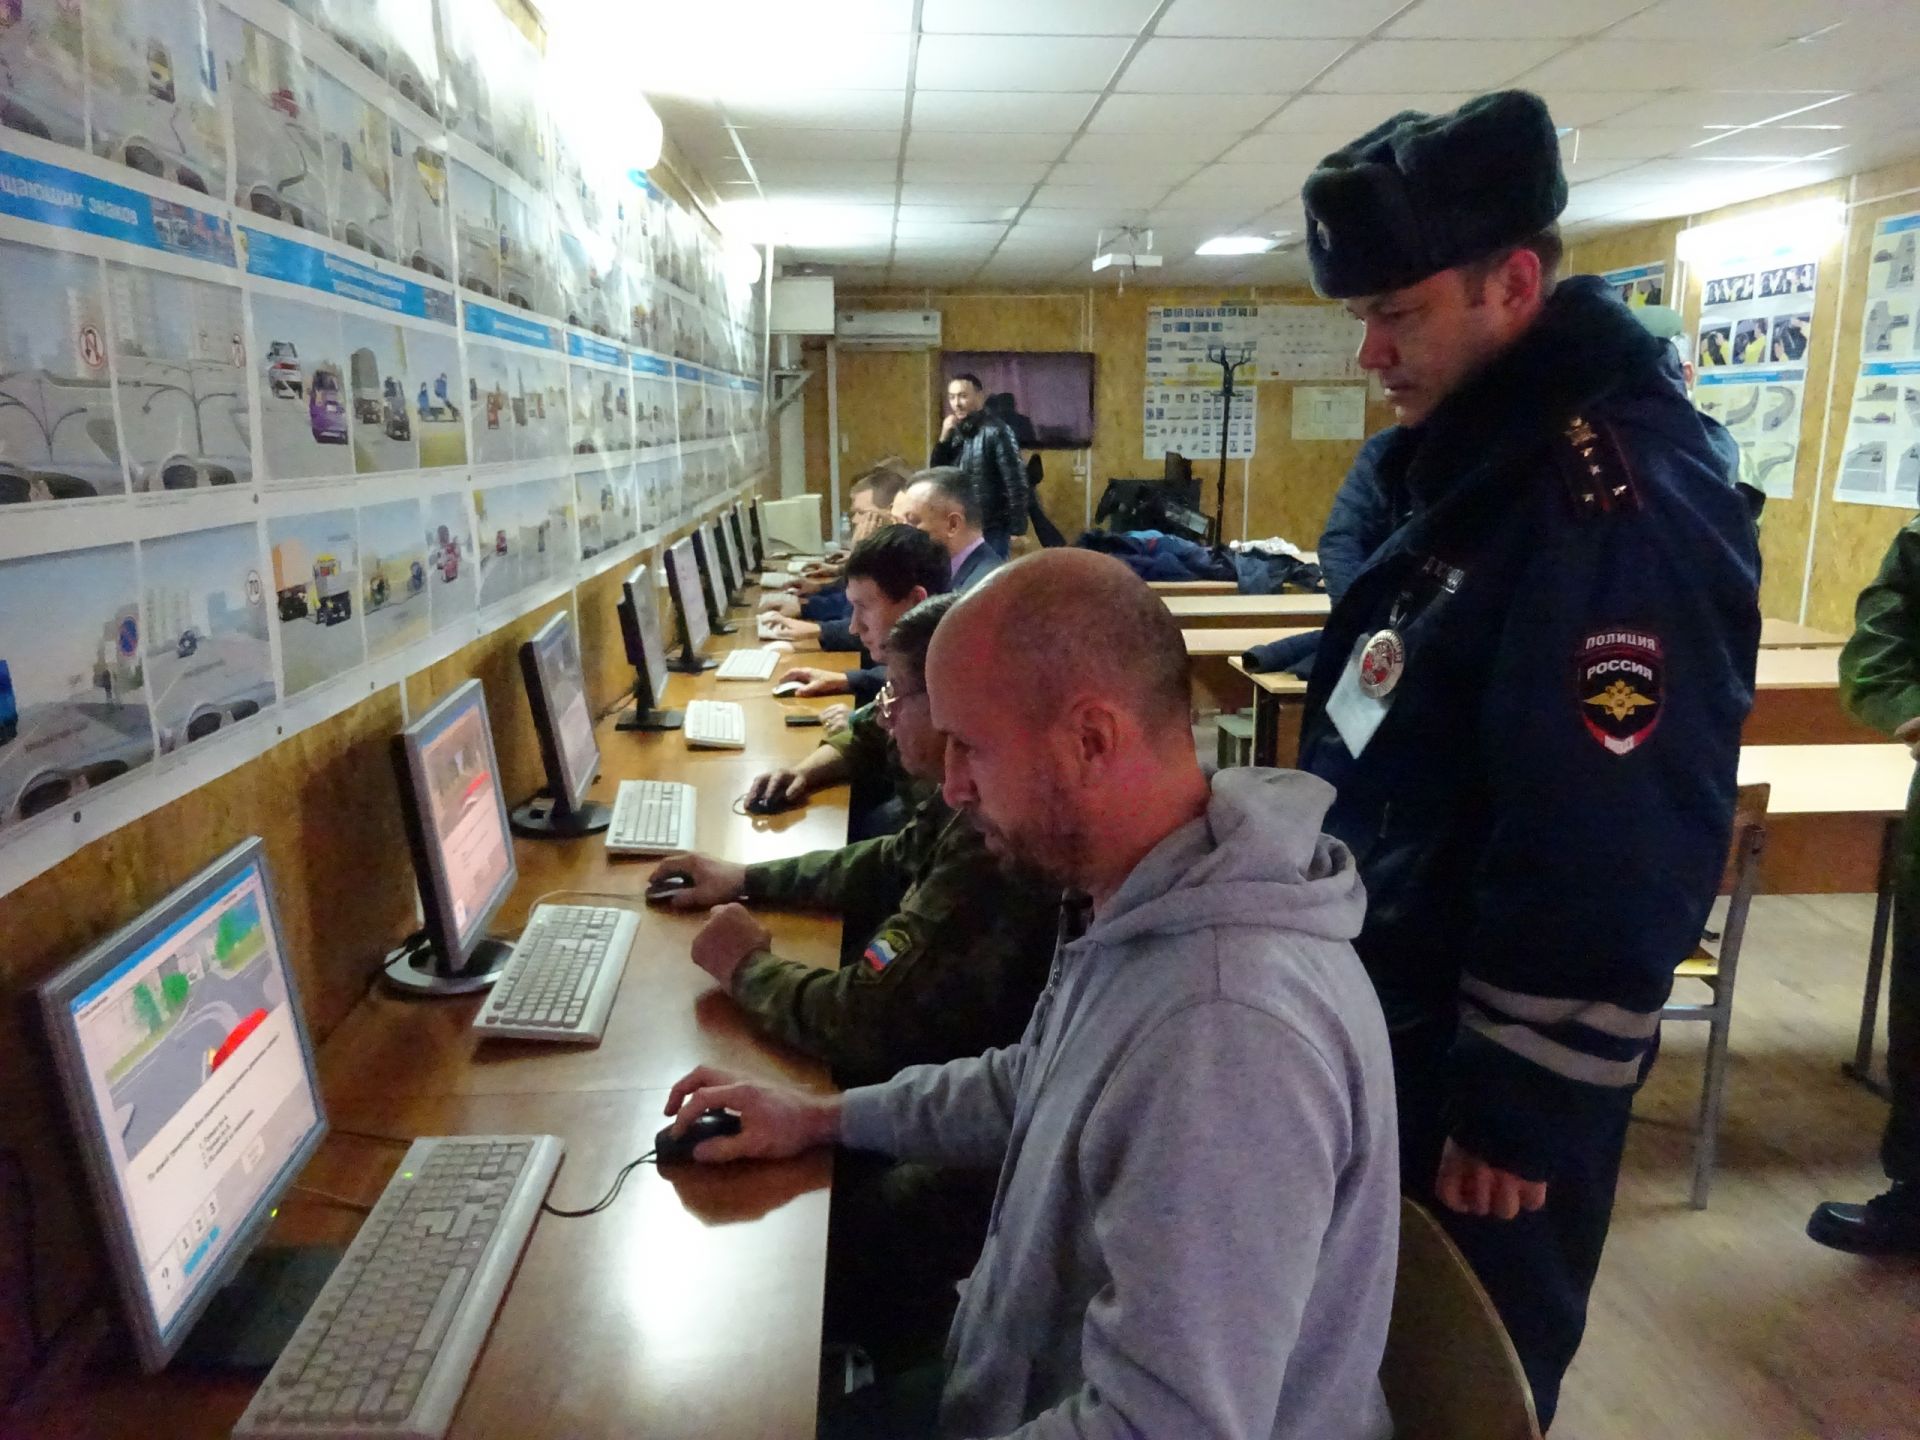 Конкурс «Автомногоборье»  собрал ветеранов военной службы